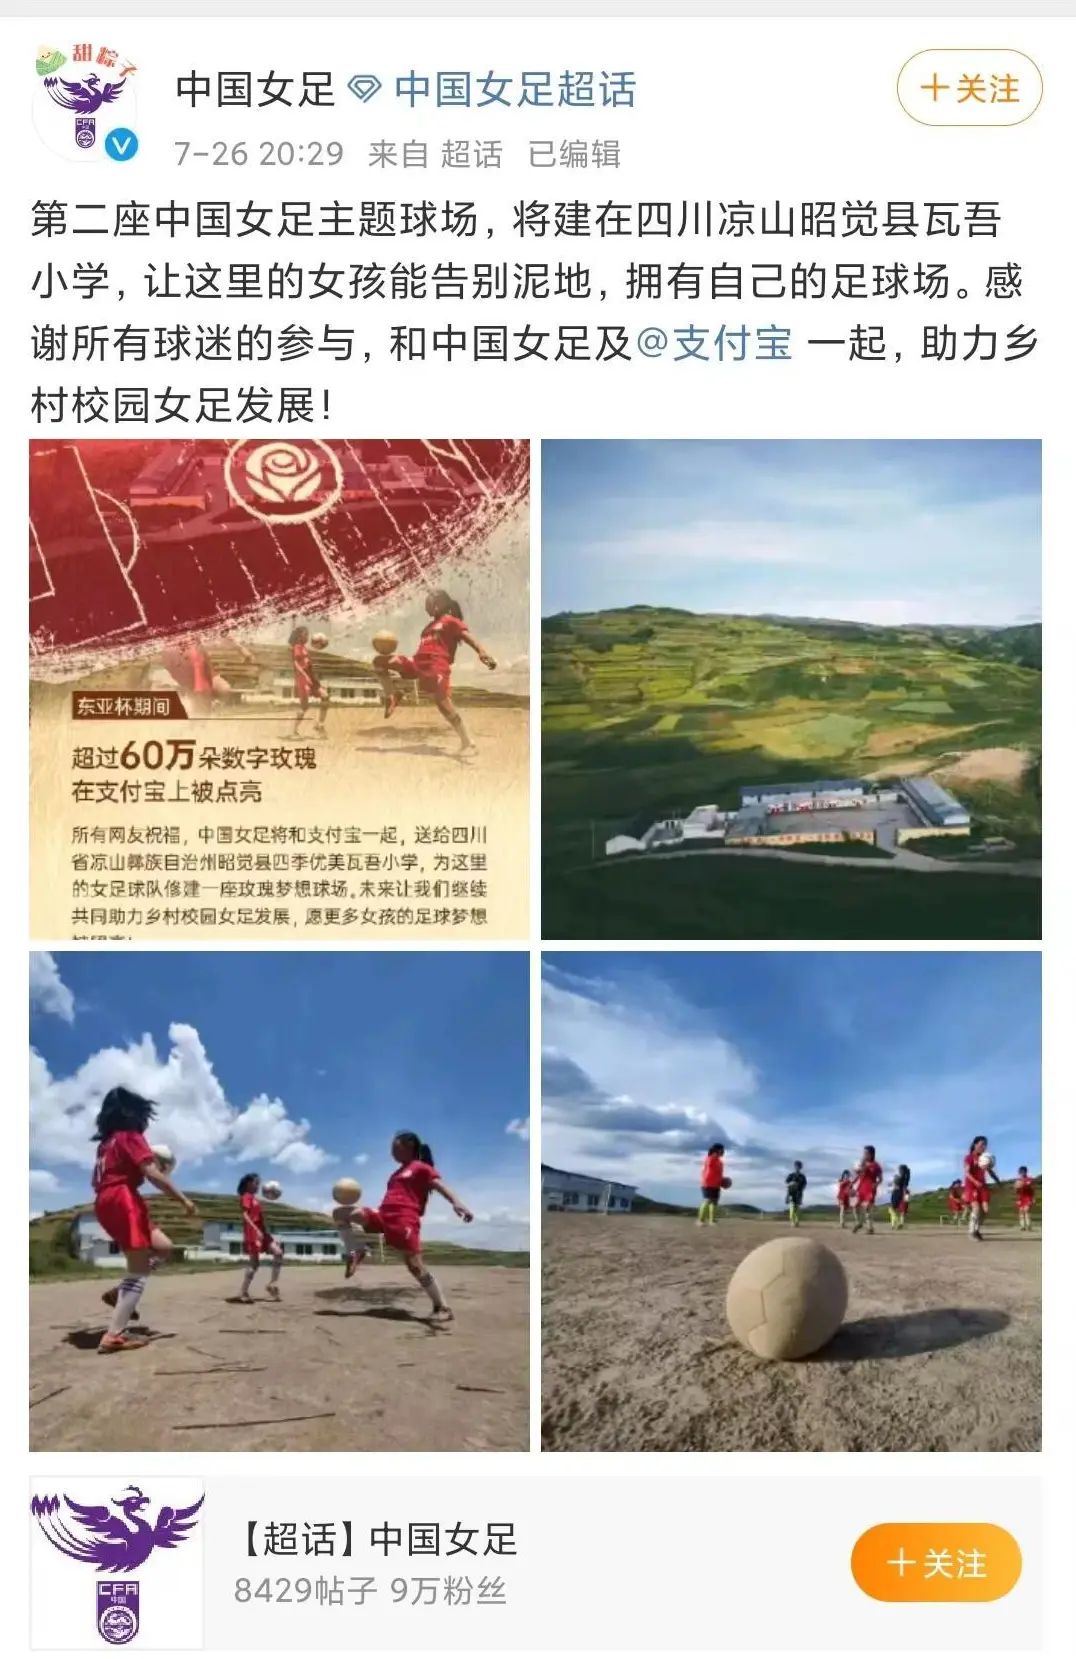 第二座中国女足主题球场将建在凉山瓦吾小学 校长：超半数学生在踢球